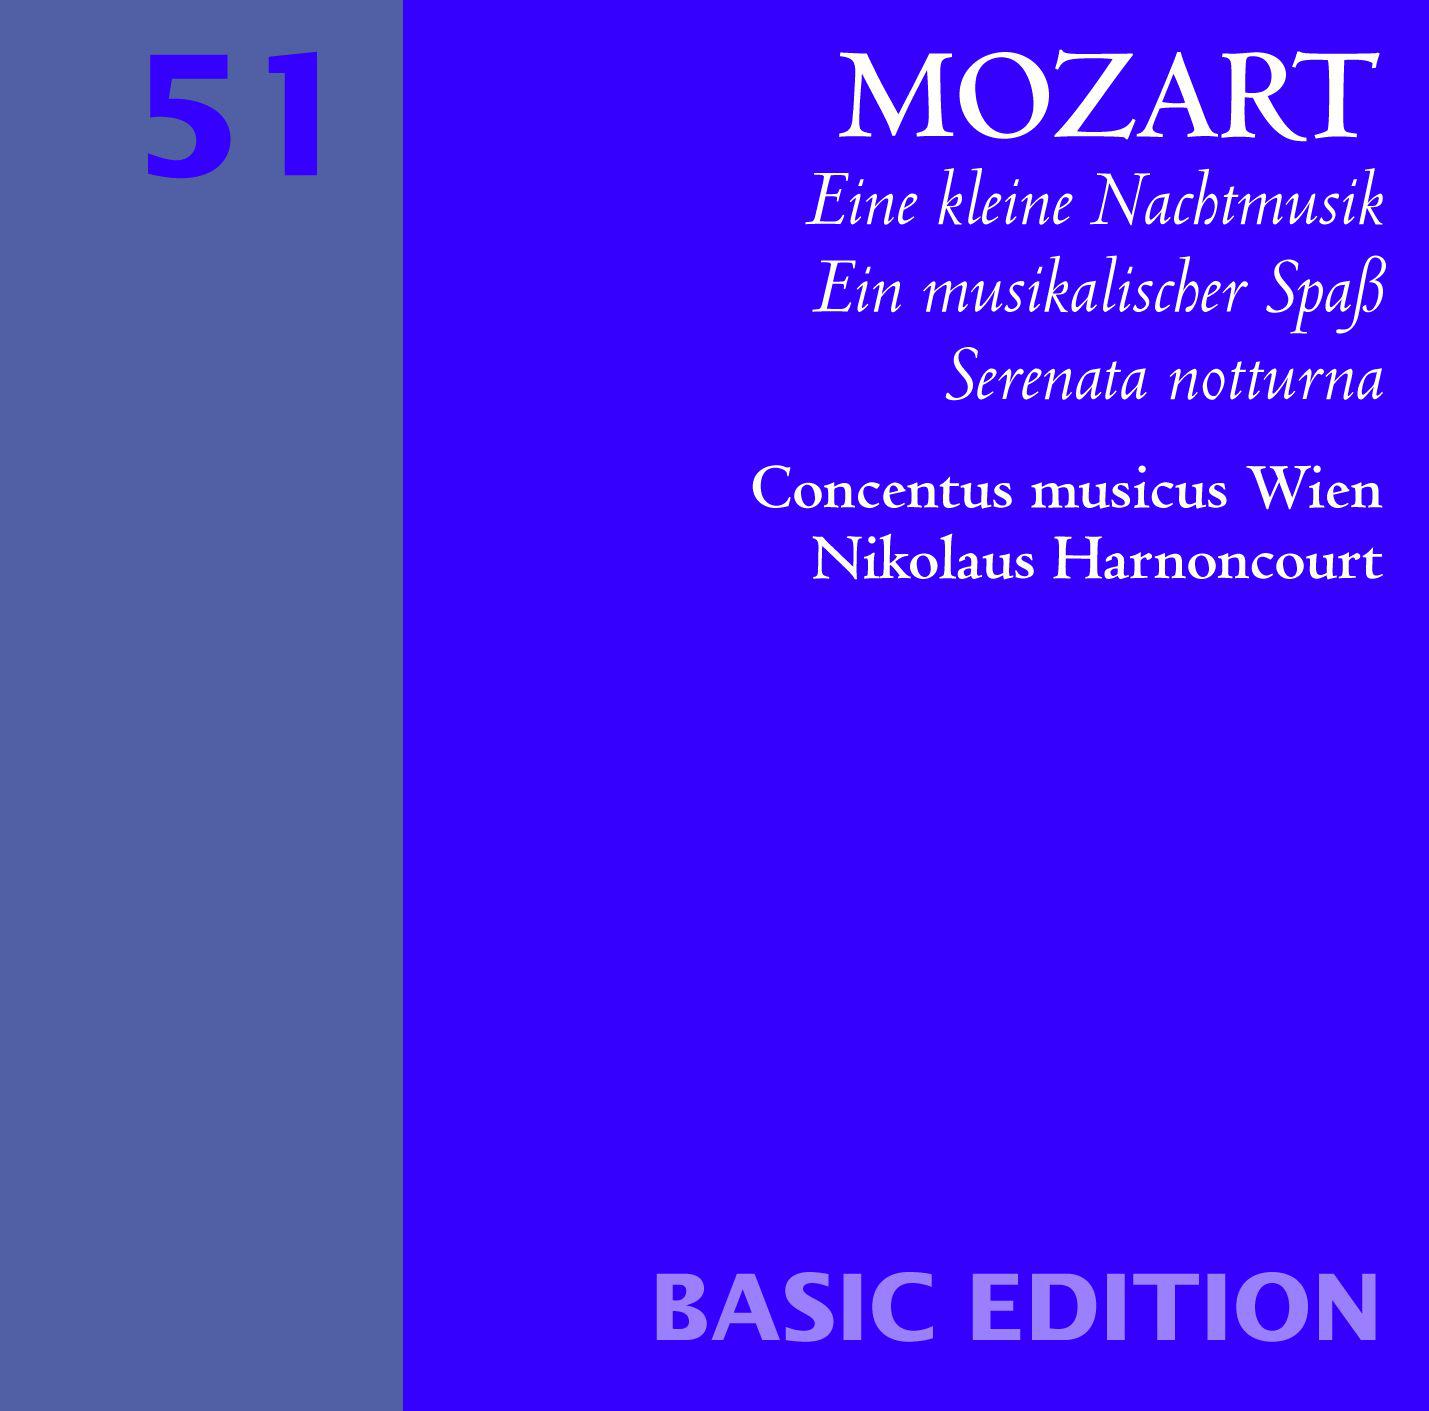 Ein musikalischer Spa, K. 522: II. Menuetto. Maestoso